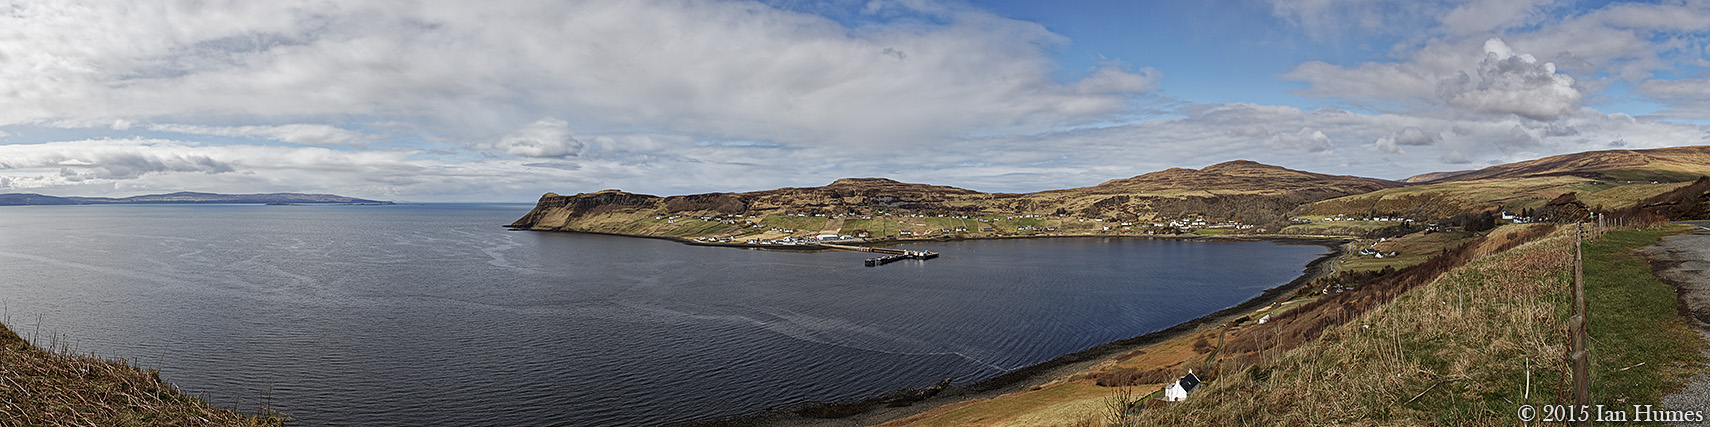 Uig - Isle of Skye